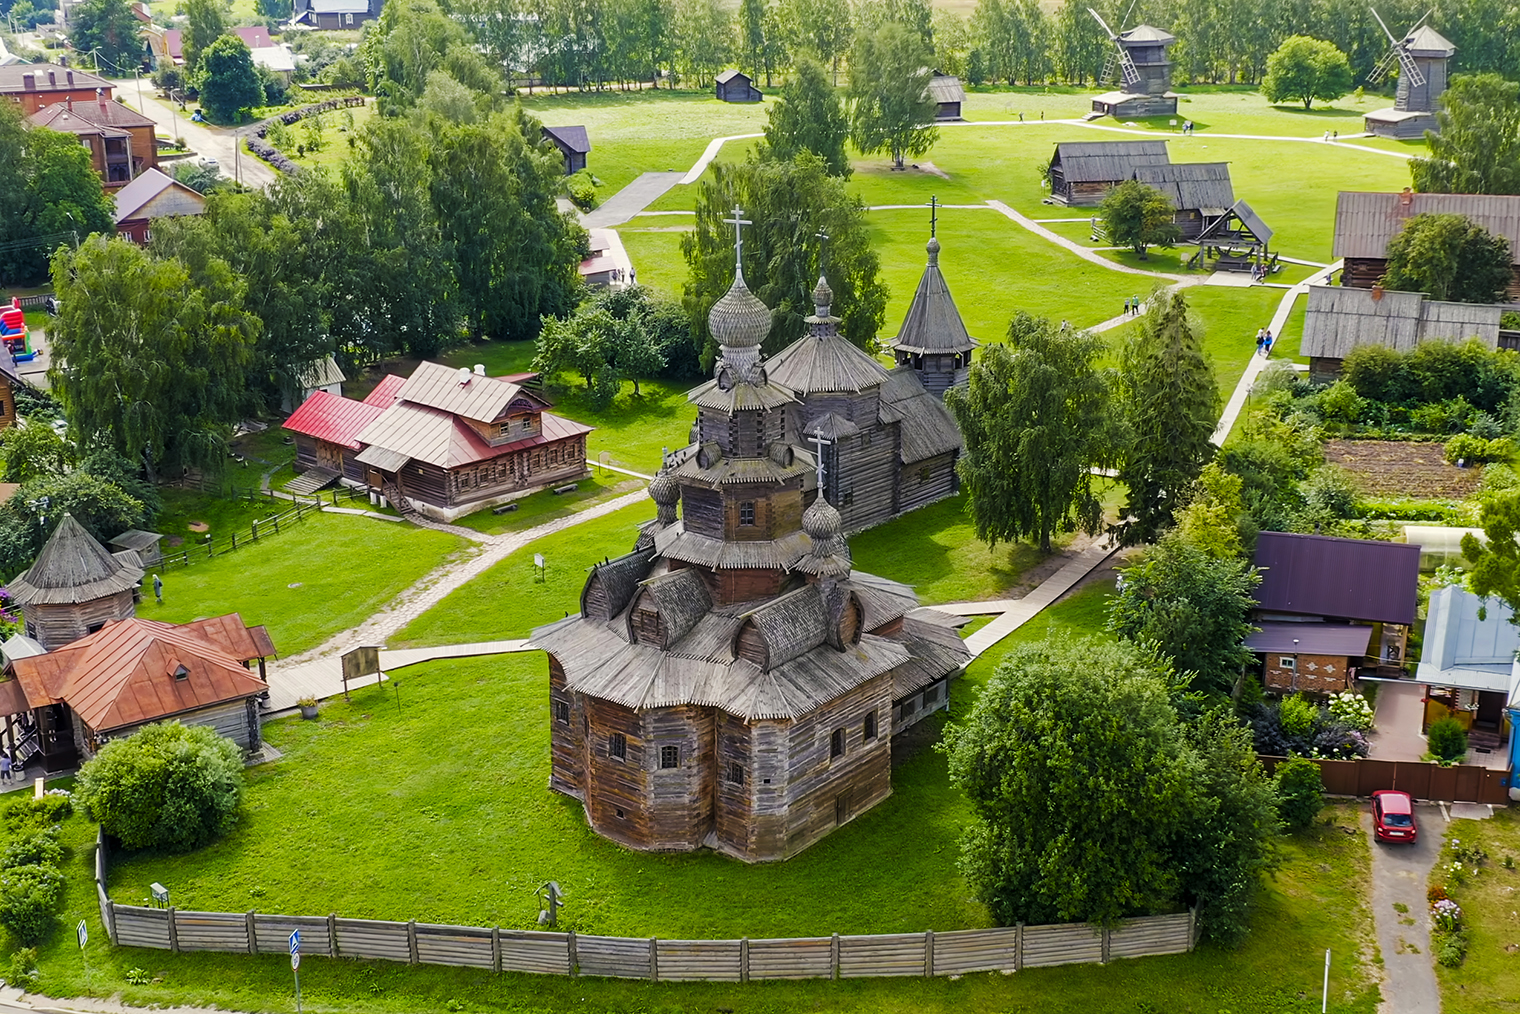 Мне Музей деревянного зодчества в Суздале напоминает Костромскую слободу. Фотография: high fliers / Shutterstock / FOTODOM